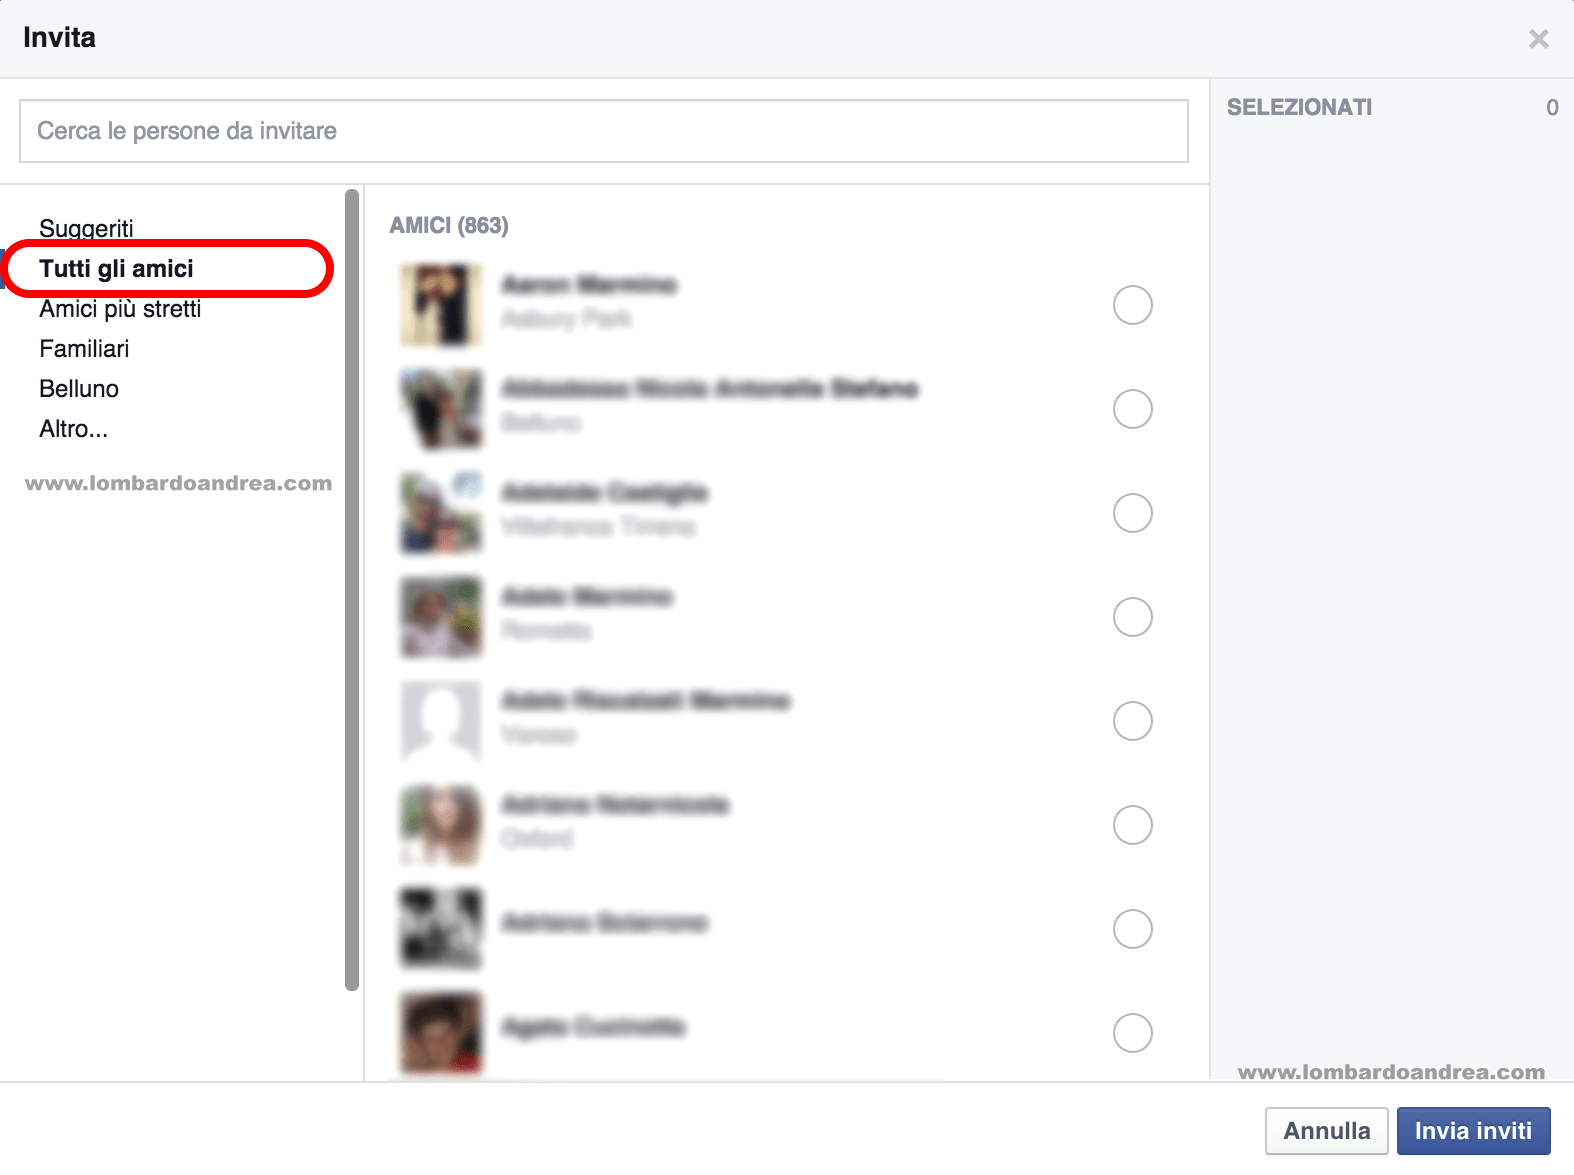 Come selezionare tutti gli amici di Facebook per un evento: la guida completa